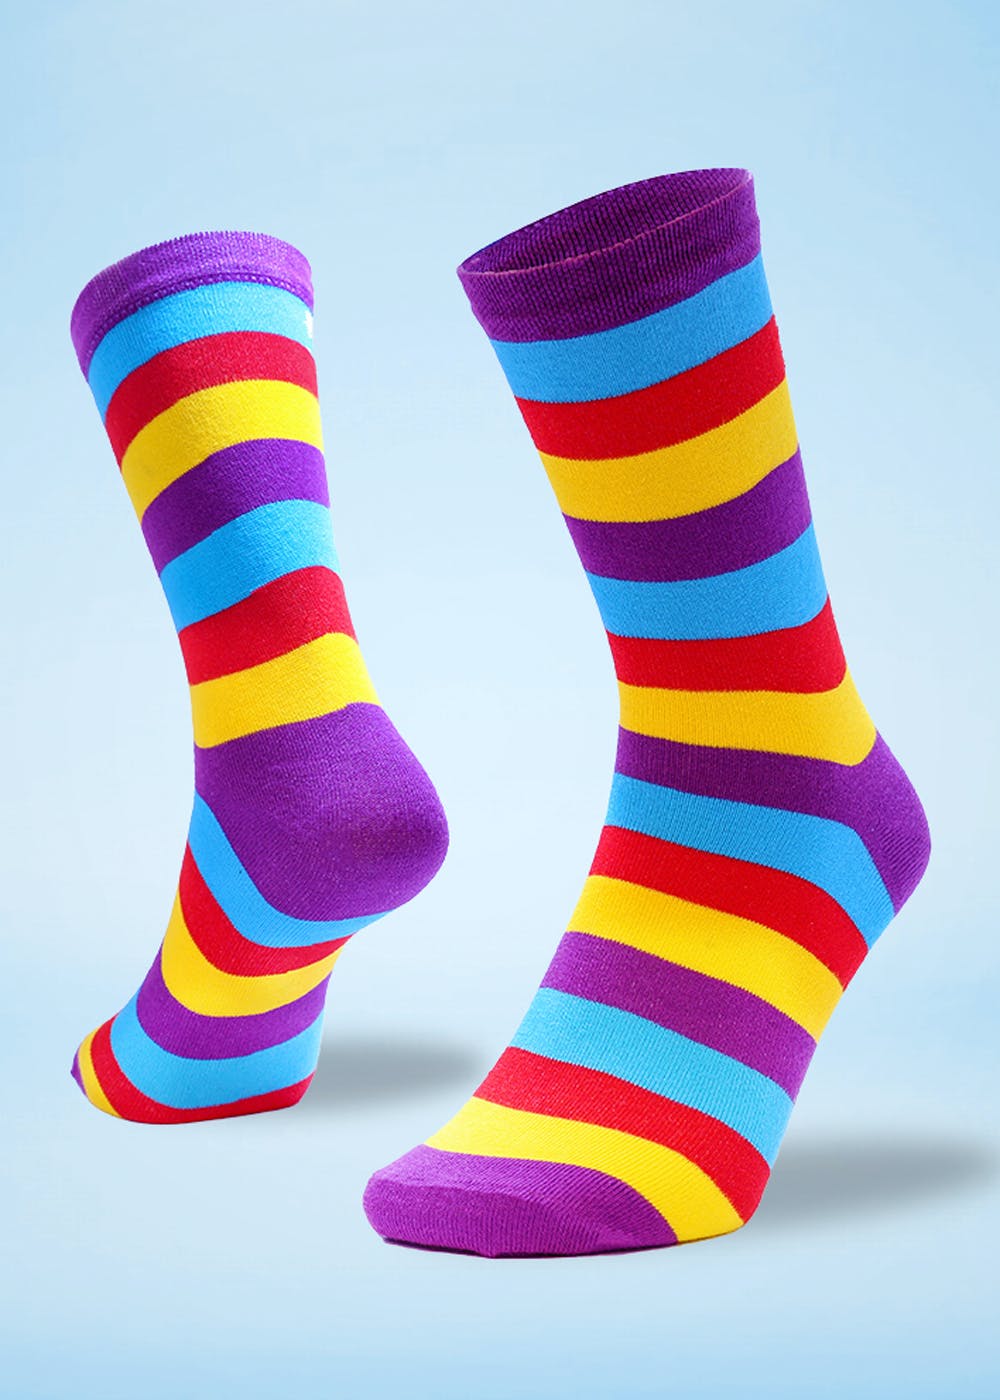 Shop For Men's Socks Online From SockSoho | LBB